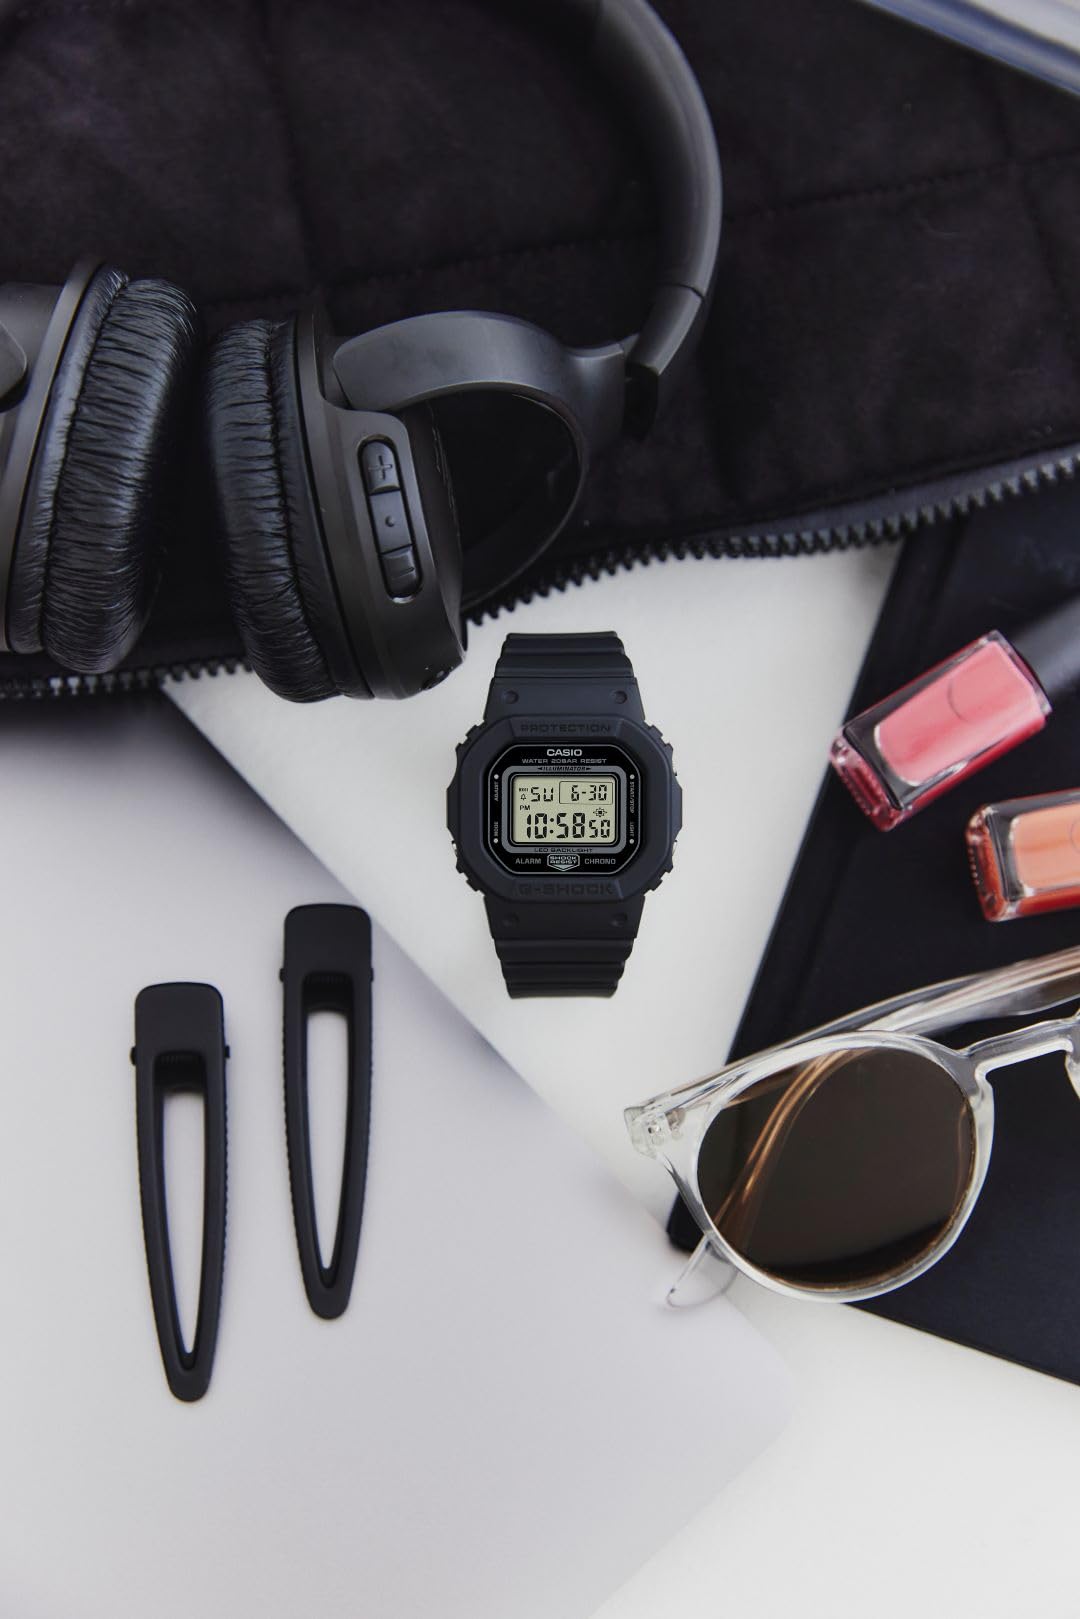 [カシオ] 腕時計 ジーショック 【国内正規品】 ミッドサイズモデル GMD-S5600BA-1JF レディース ブラック - BanzaiHobby